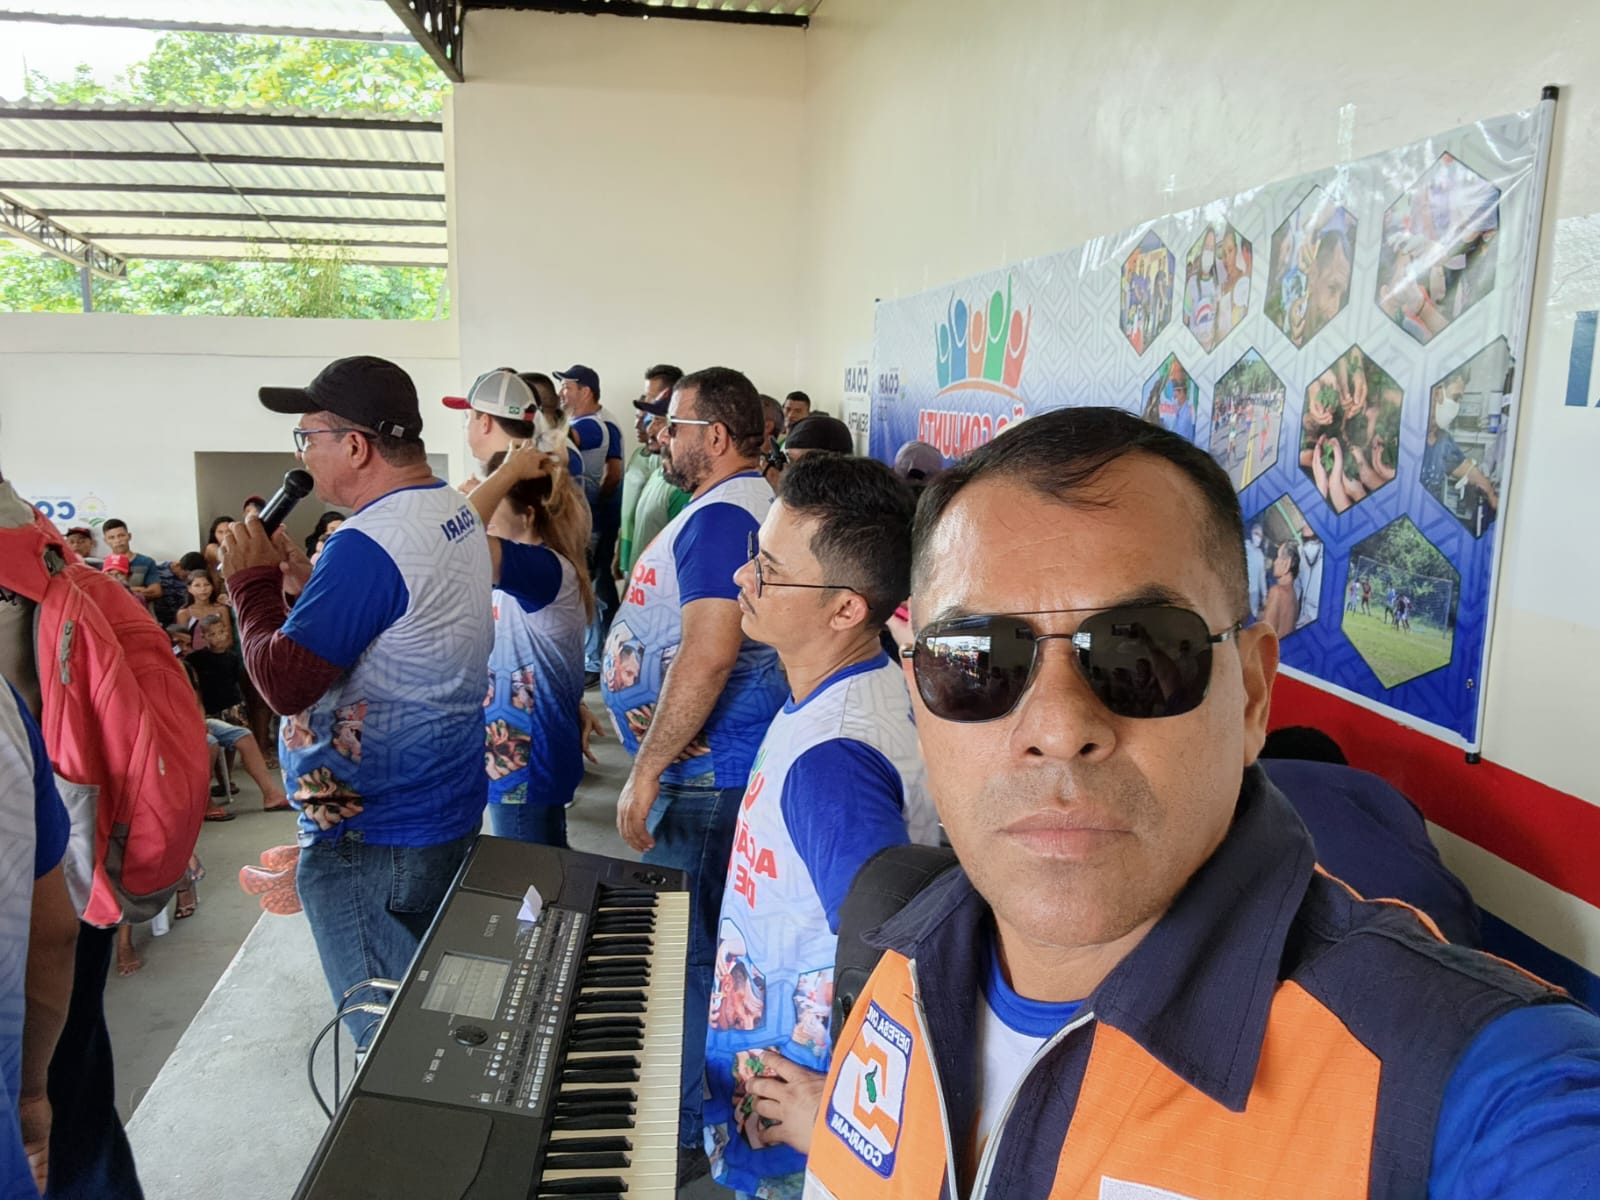 Coari- Secretario de Segurança Pública e Defesa Social coronel Afonso Garcia participa da ação comunitária na comunidade Vila do Trocaris